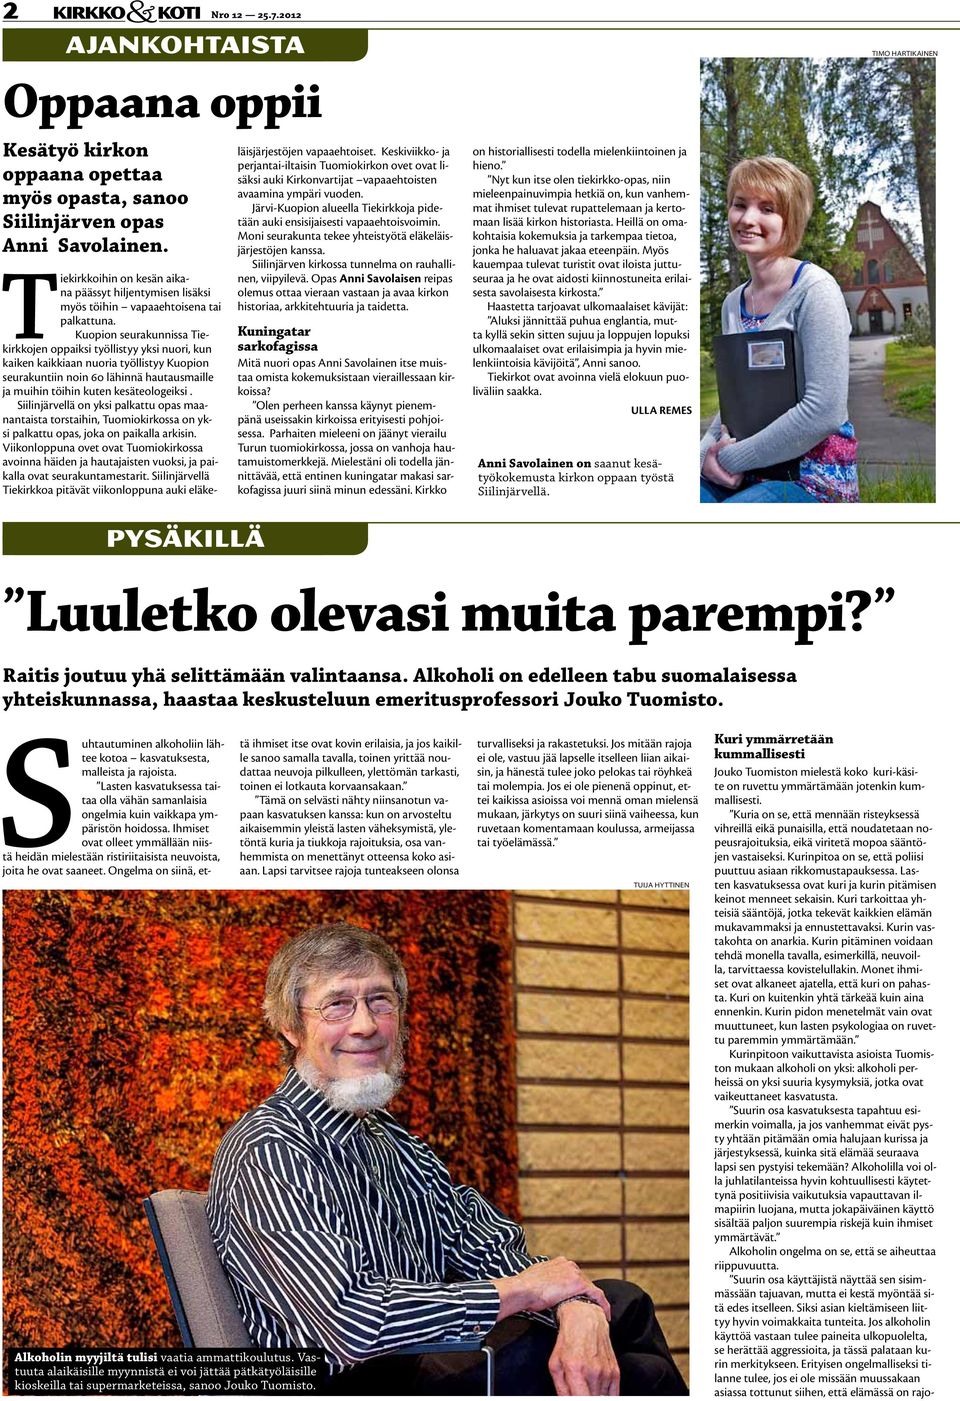 Kuopion seurakunnissa Tiekirkkojen oppaiksi työllistyy yksi nuori, kun kaiken kaikkiaan nuoria työllistyy Kuopion seurakuntiin noin 60 lähinnä hautausmaille ja muihin töihin kuten kesäteologeiksi.